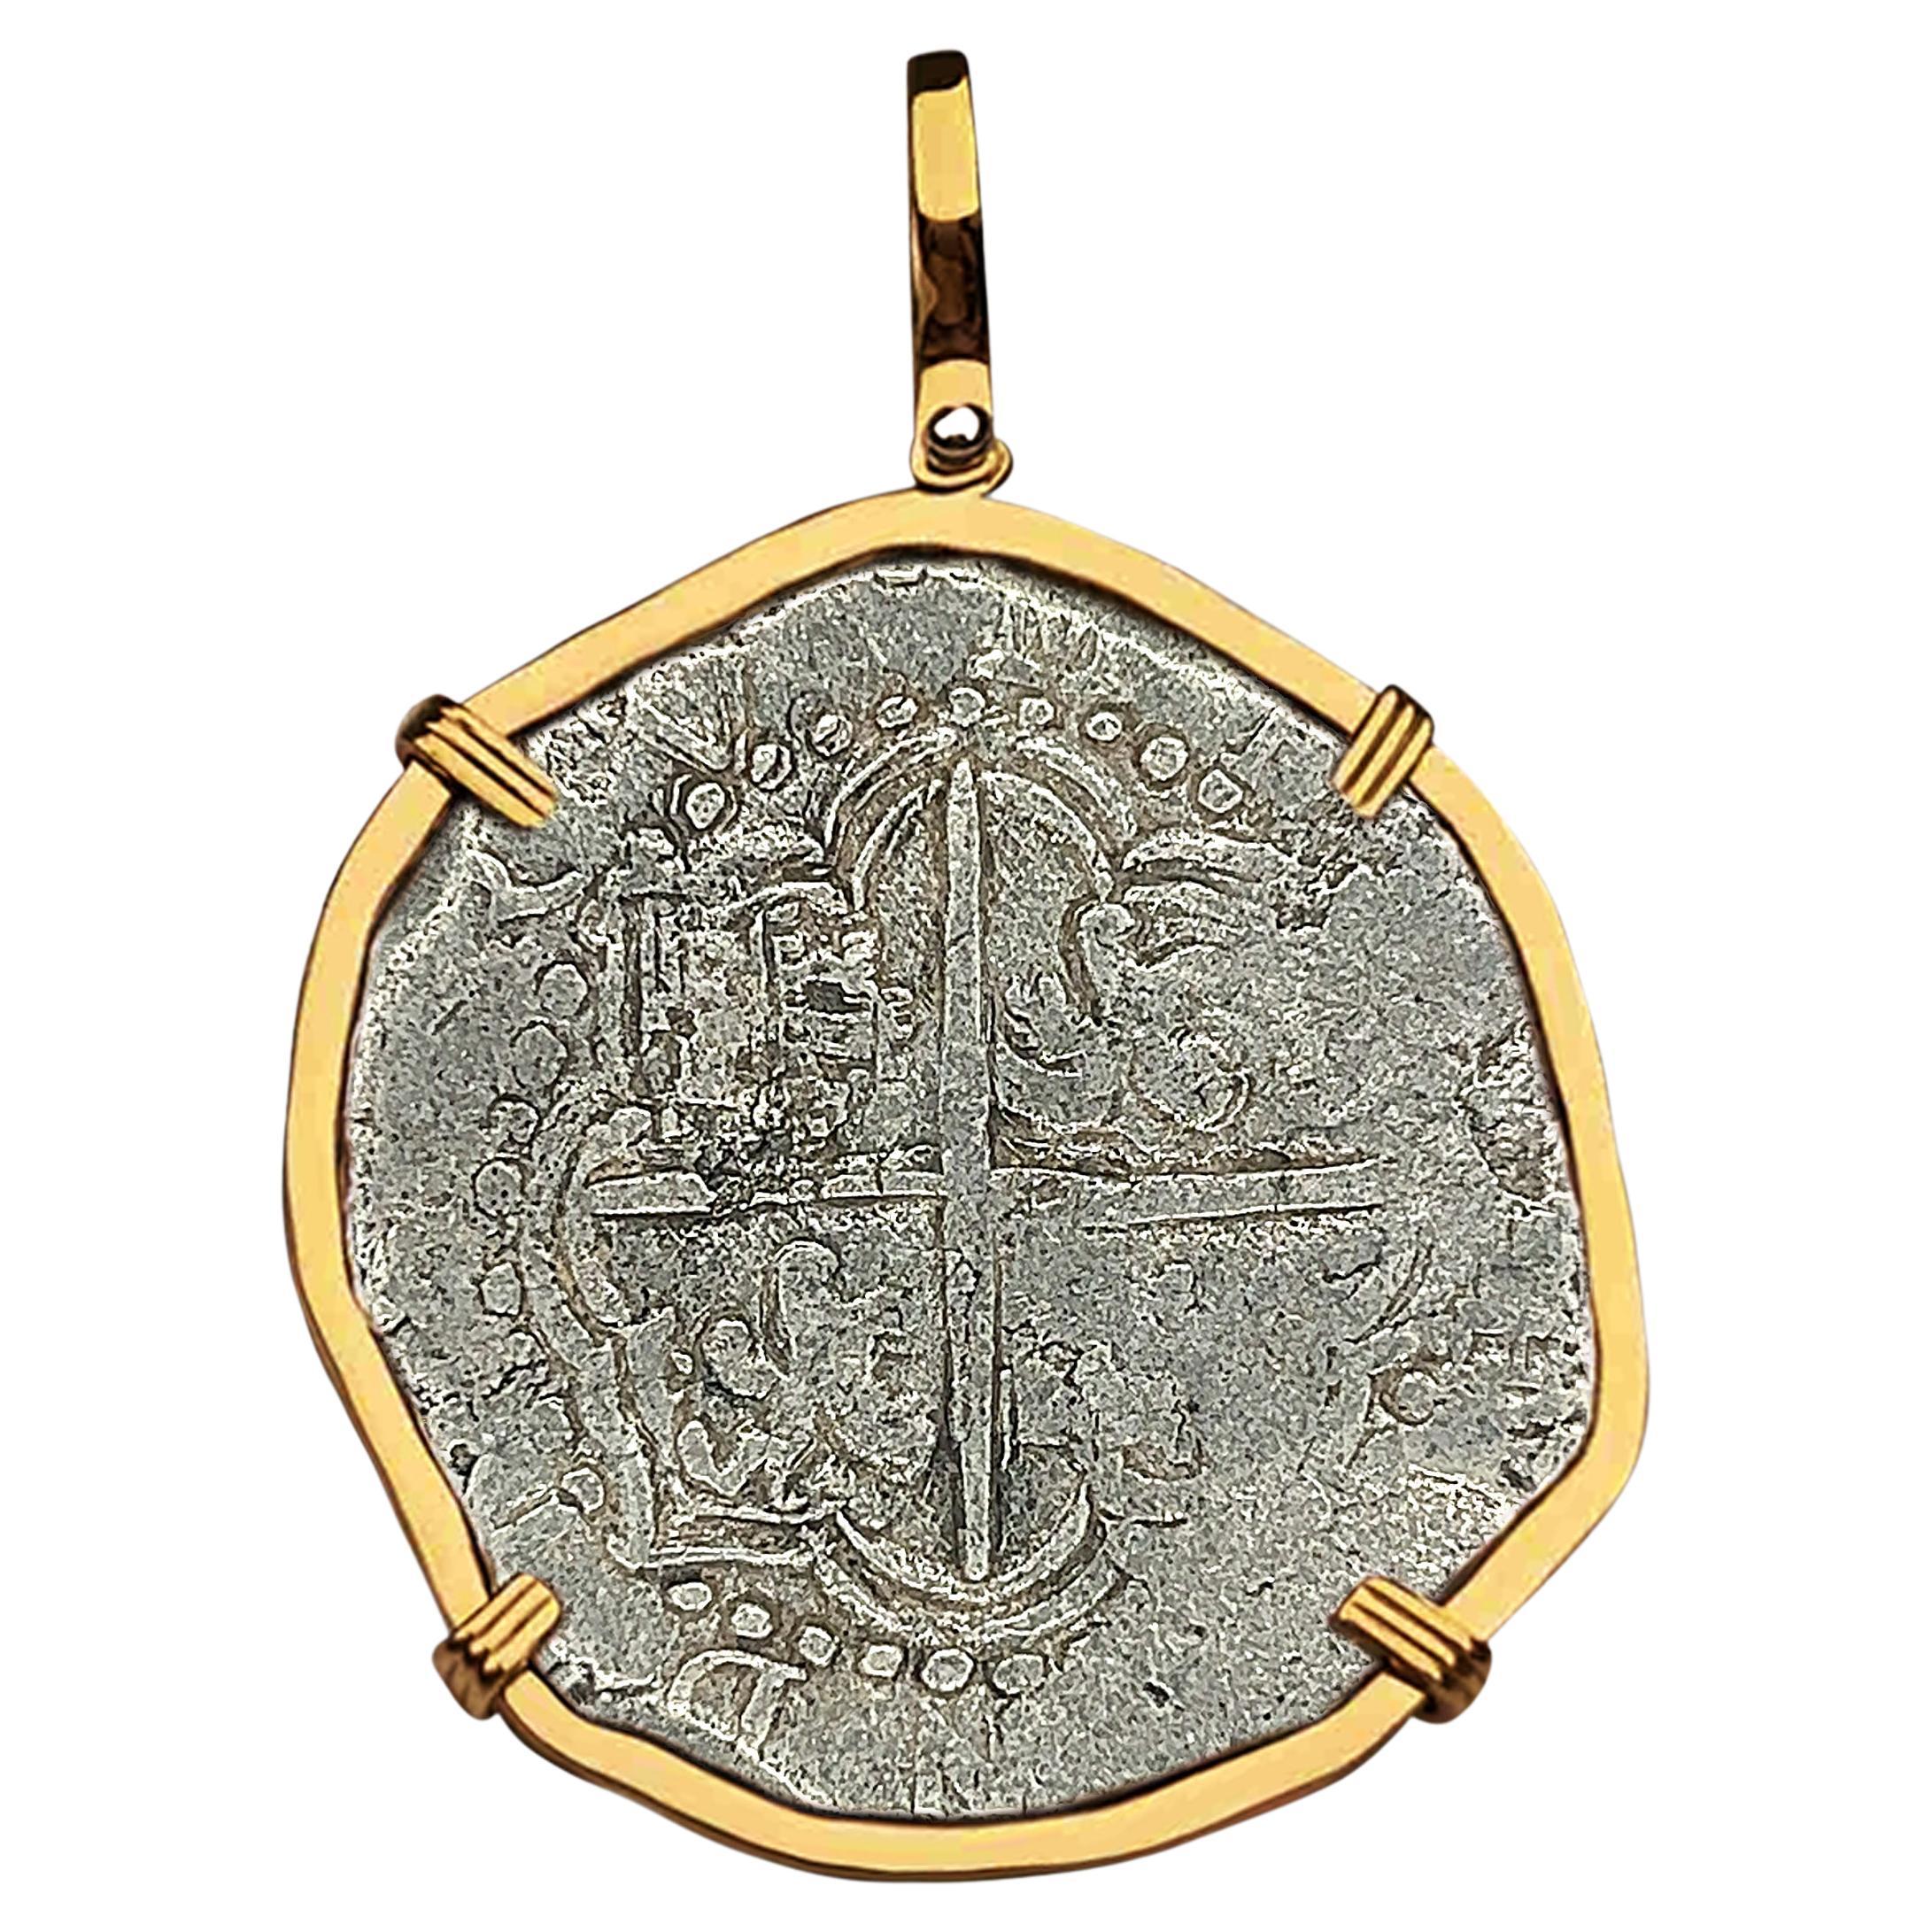 Atocha Shipwreck 8 Reale Grade 2 Potosi Mint Coin and Gold Pendant